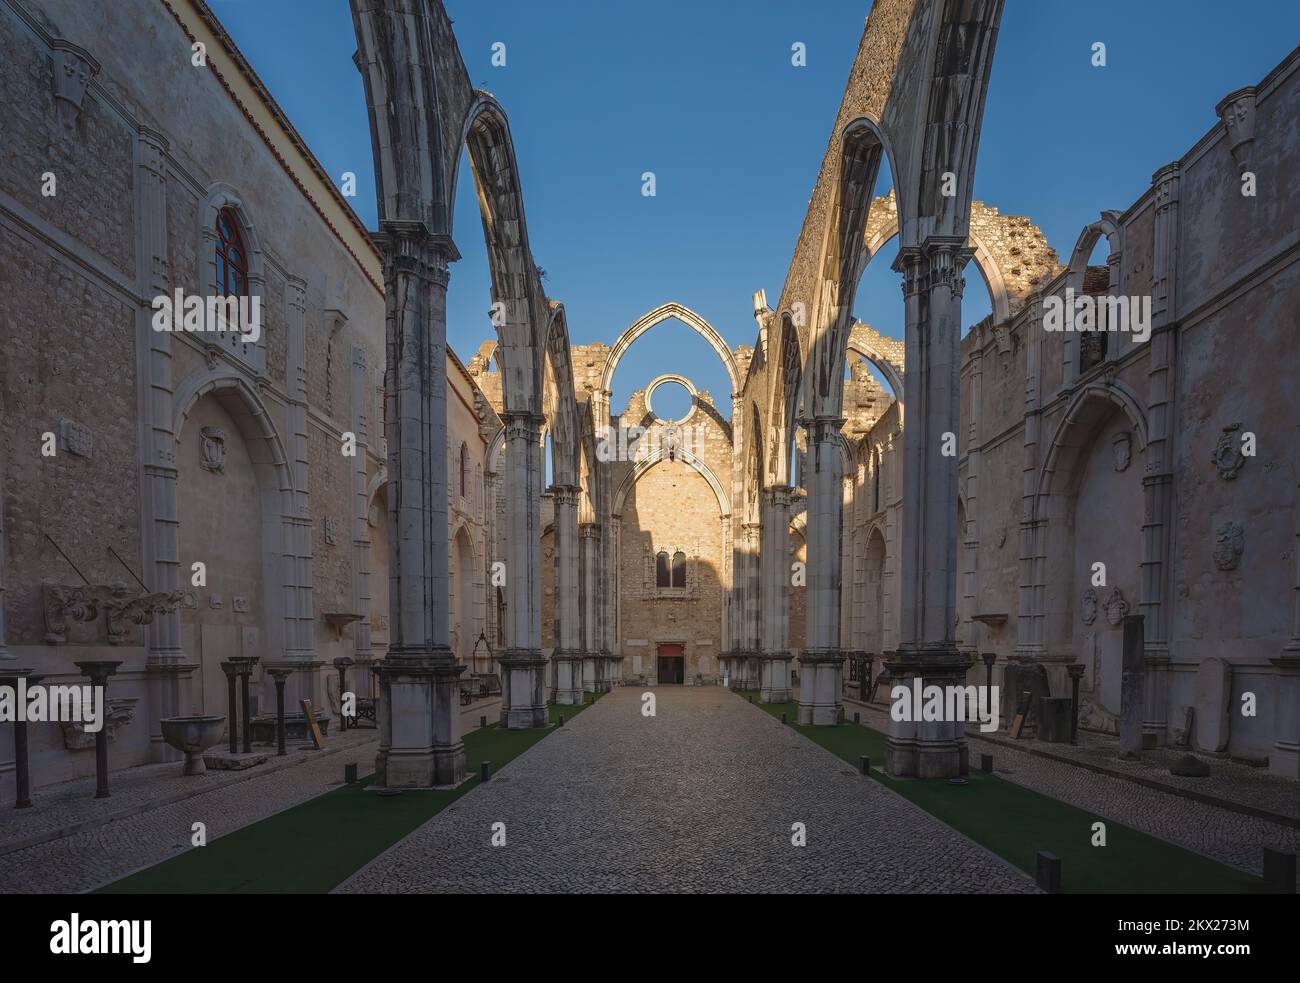 Ruines de la nef principale de l'église de Carmo au couvent de Carmo (Convento do Carmo) - Lisbonne, Portugal Banque D'Images